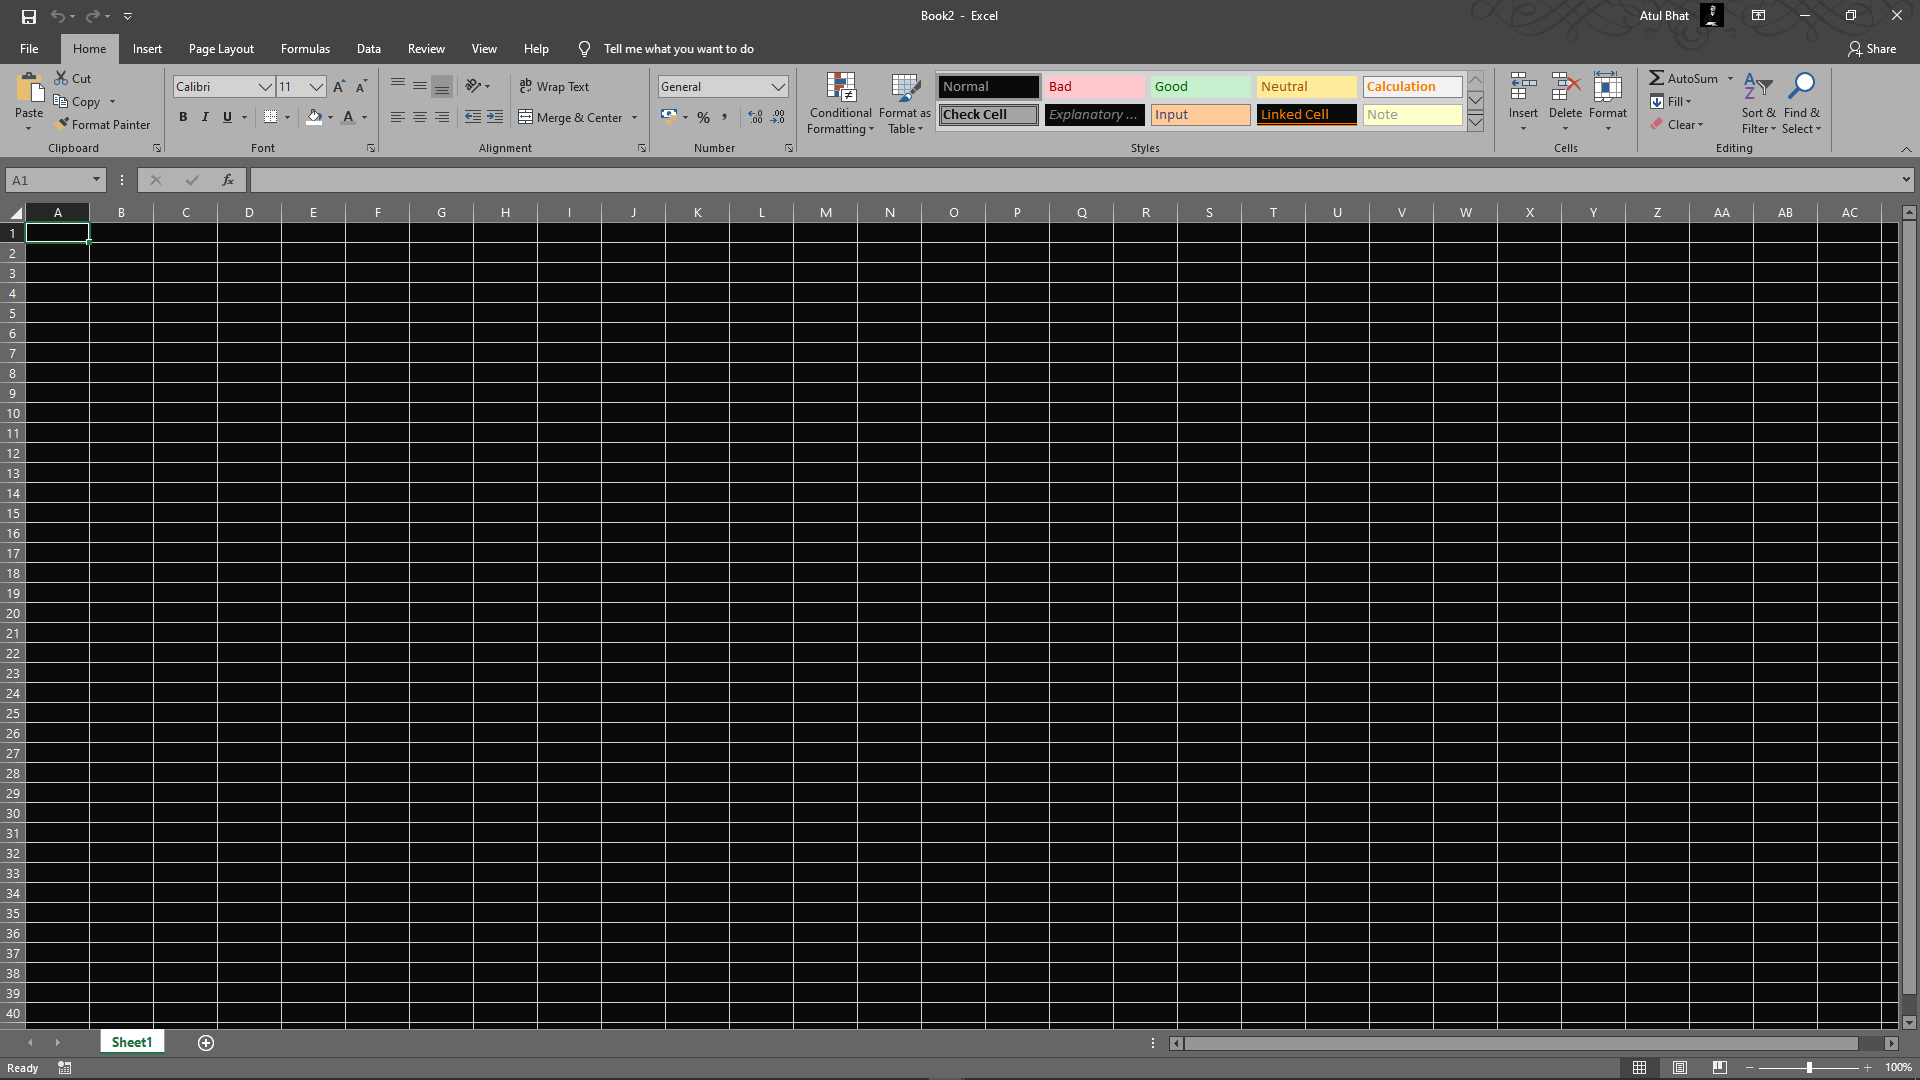 Màu nền ô Excel: Nếu bạn là một người thường xuyên sử dụng Excel, màu nền ô có thể là một yếu tố quan trọng với sự ấn tượng về bảng tính của bạn. Xem hình ảnh tổng hợp về màu sắc của các ô Excel để tìm kiếm sự kết hợp tuyệt vời nhất cho công việc của bạn!